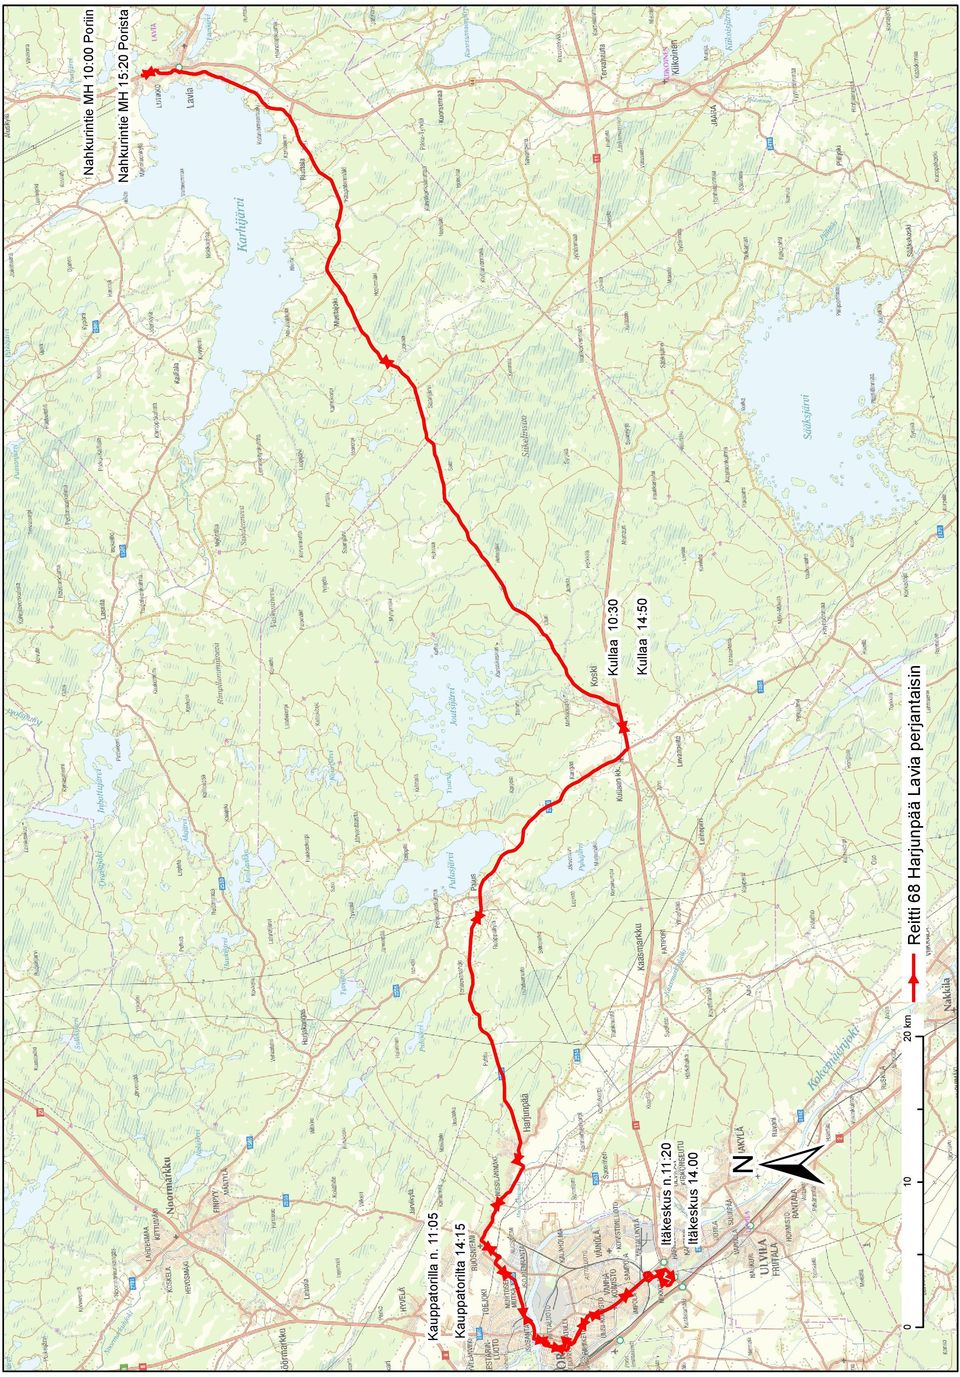 11:05 20 km Reitti 68 Harjunpää Lavia perjantaisin